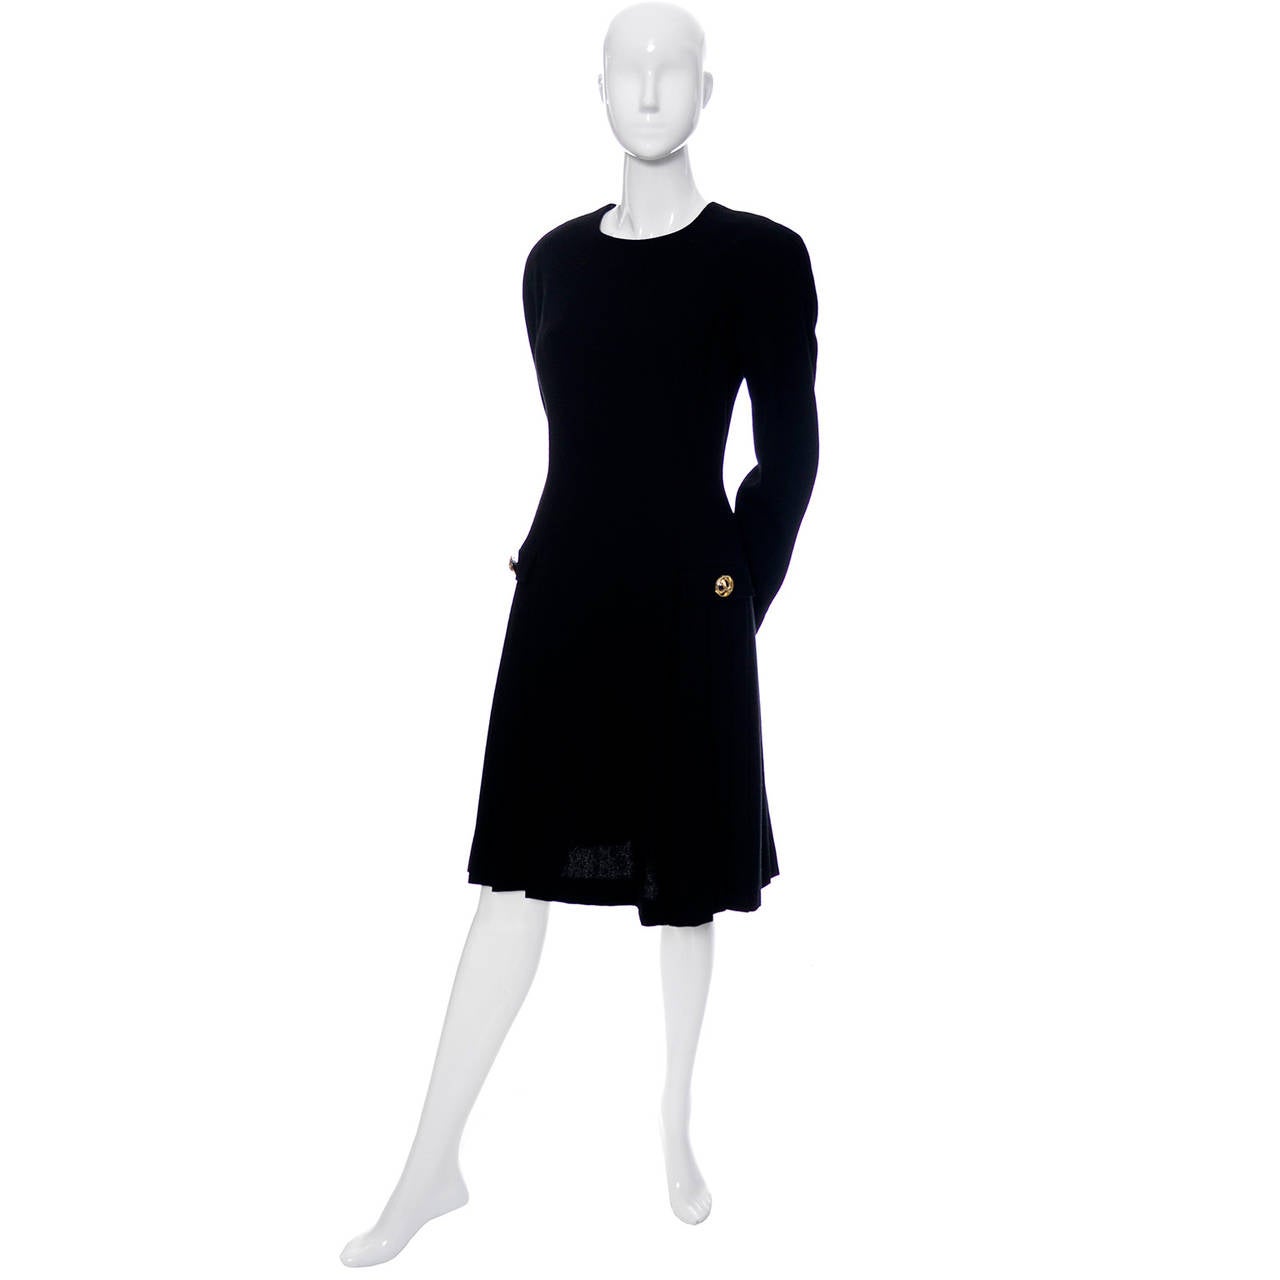 Dies ist ein klassisches schwarzes Vintage-Kleid von Arnold Scaasi. Das schwarze Wollstrickkleid mit fallender Taille ist vollständig gefüttert und stammt aus den frühen 1980er Jahren. Das Kleid hat einen hübschen Faltenrock:: Dolman-Ärmel und einen